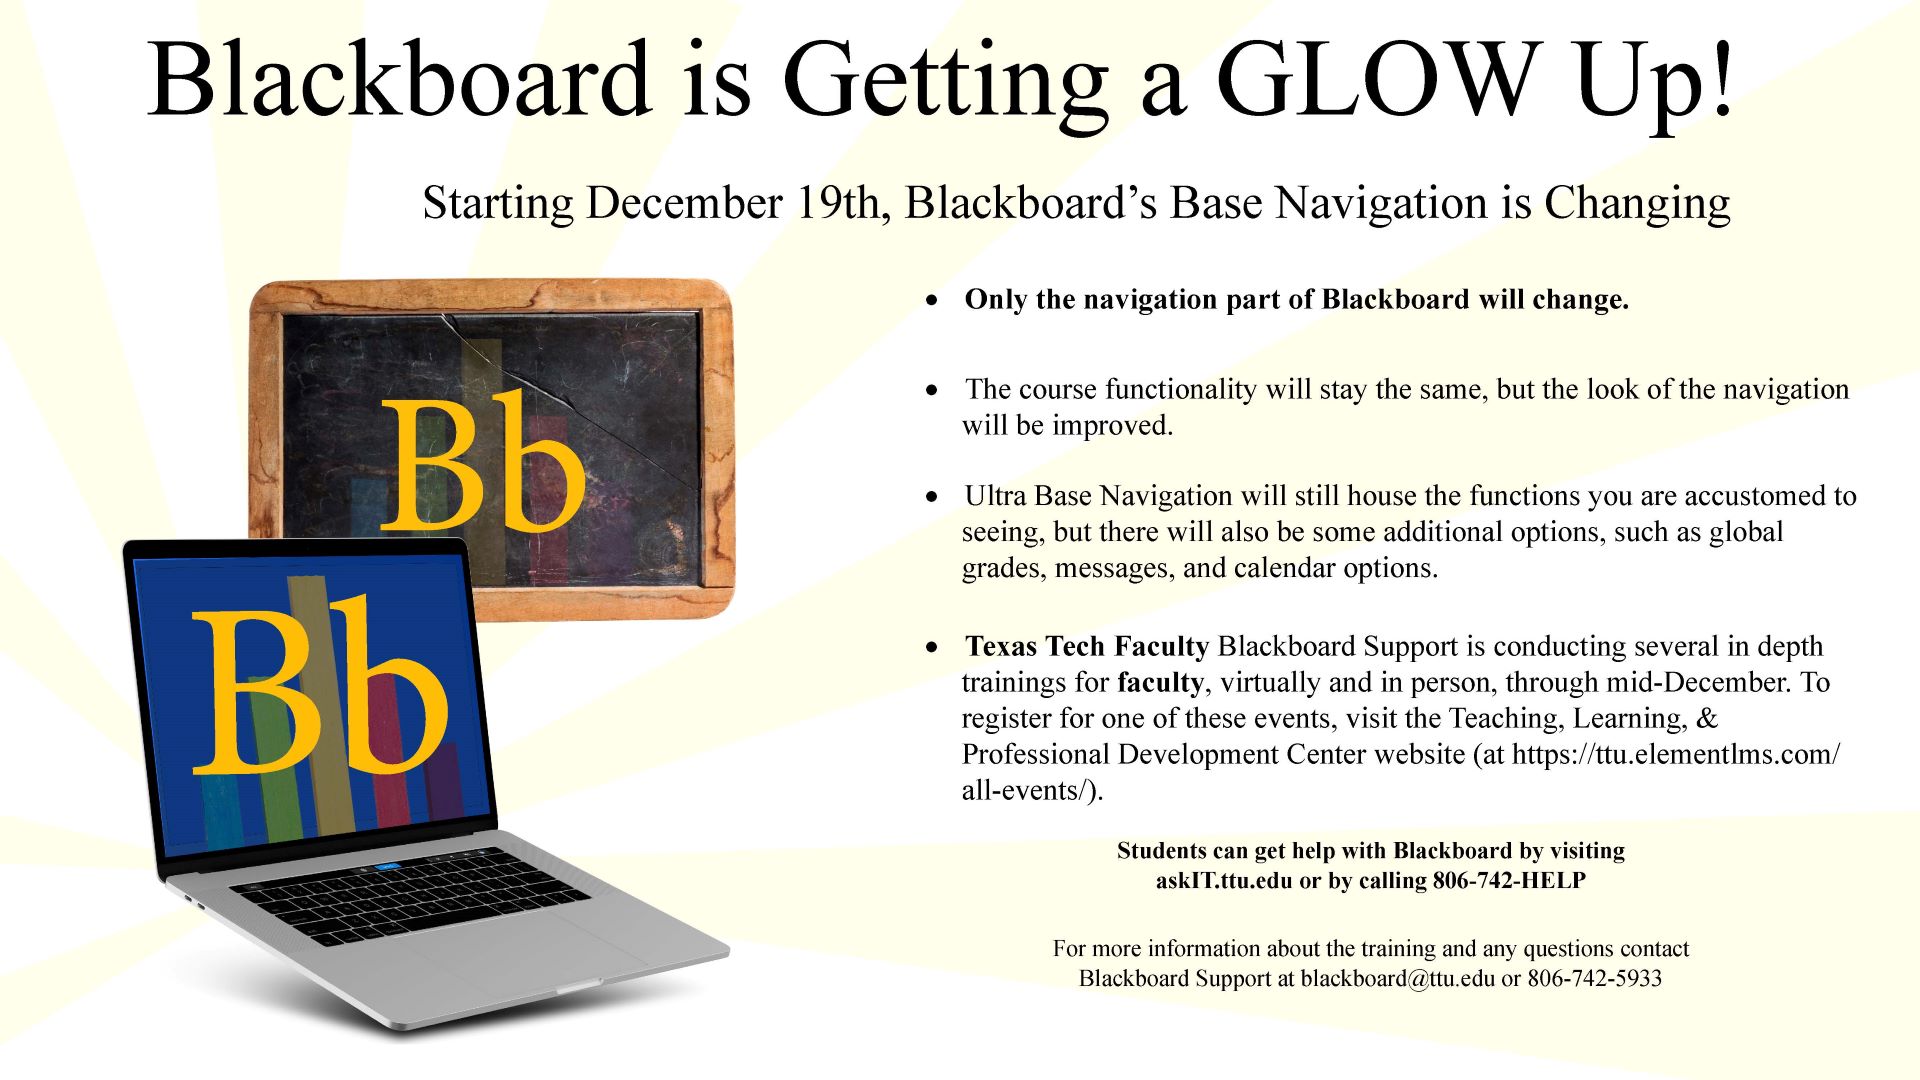 Blackboard is getting a glow up!